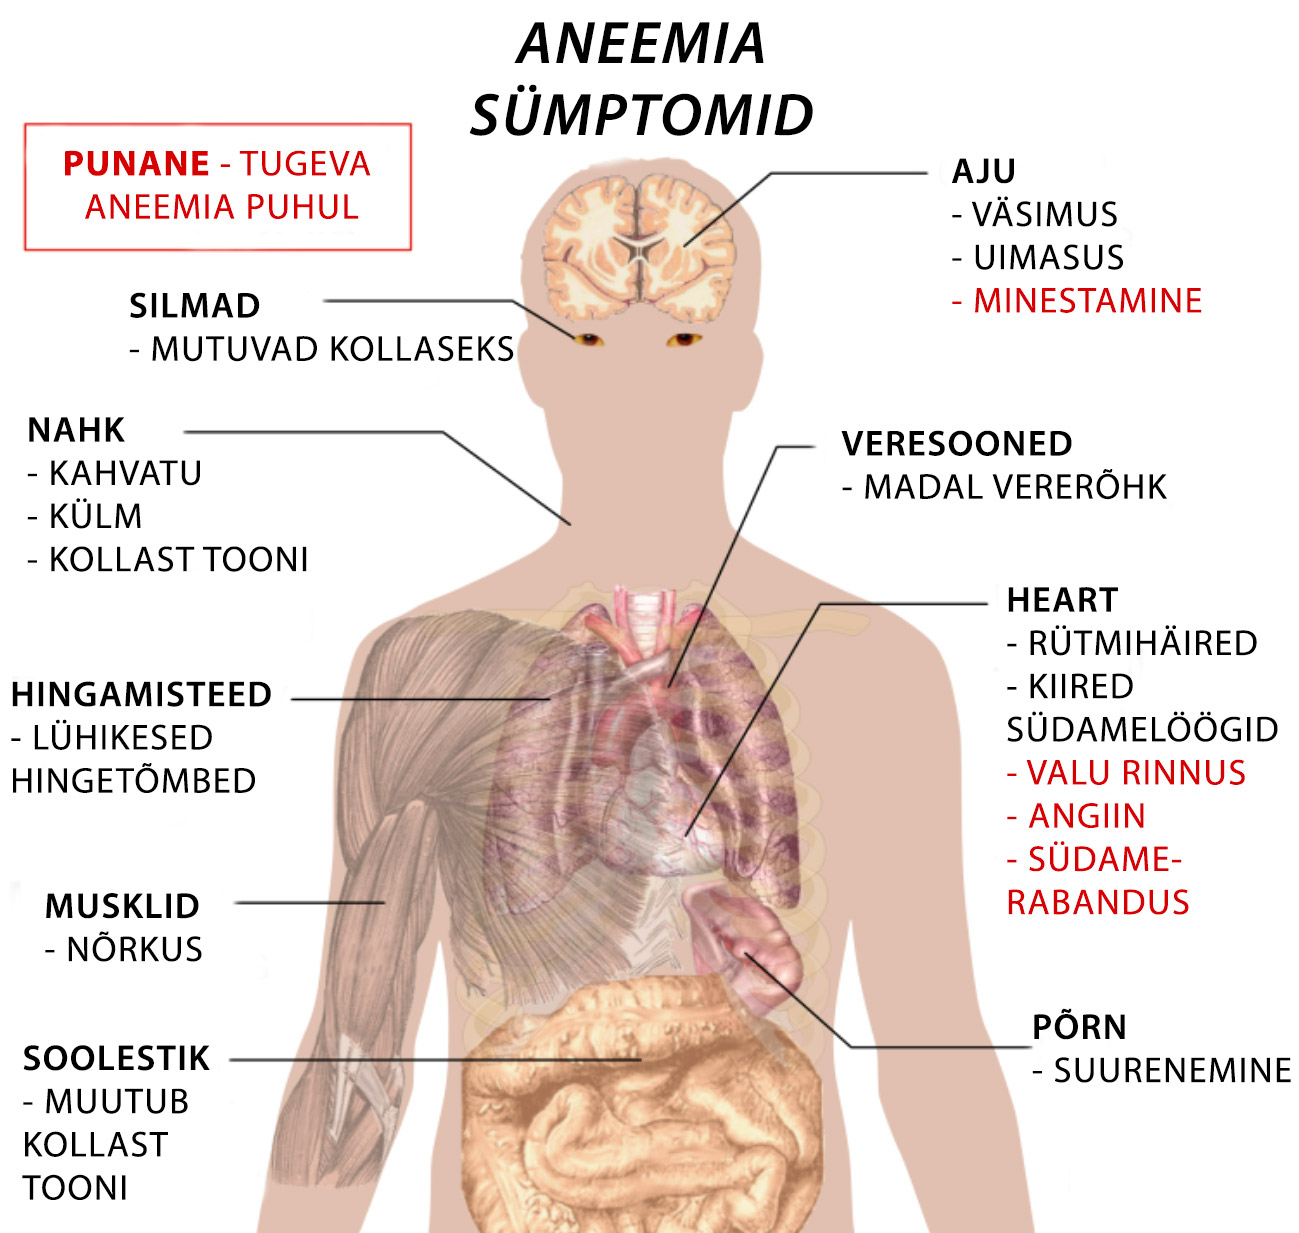 aneemia